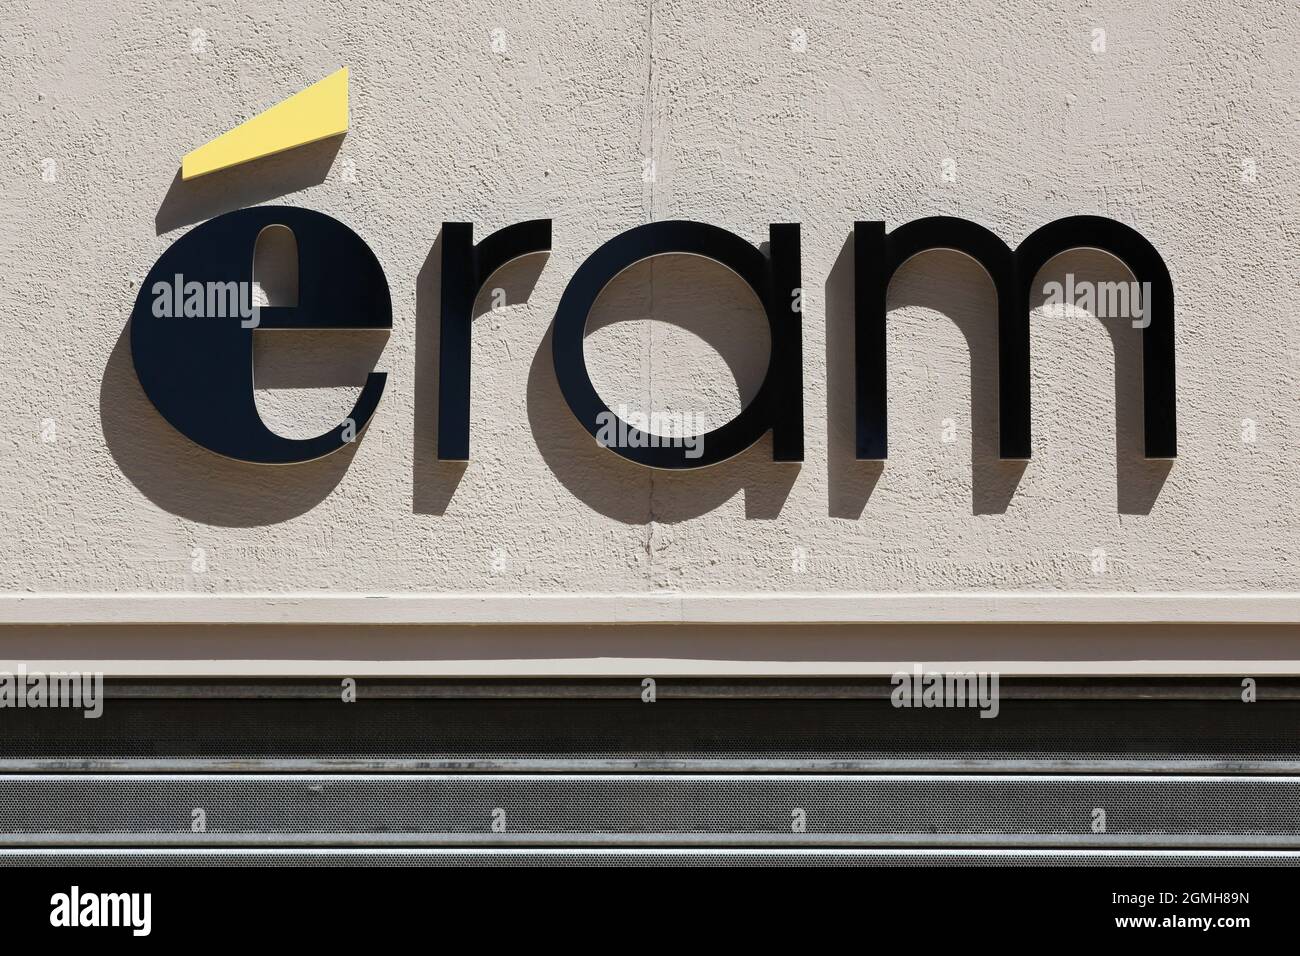 Villefranche, France - 17 mai 2020 : logo Eram sur un mur. Eram est une  marque et un détaillant français spécialisé dans les chaussures et les  vêtements Photo Stock - Alamy